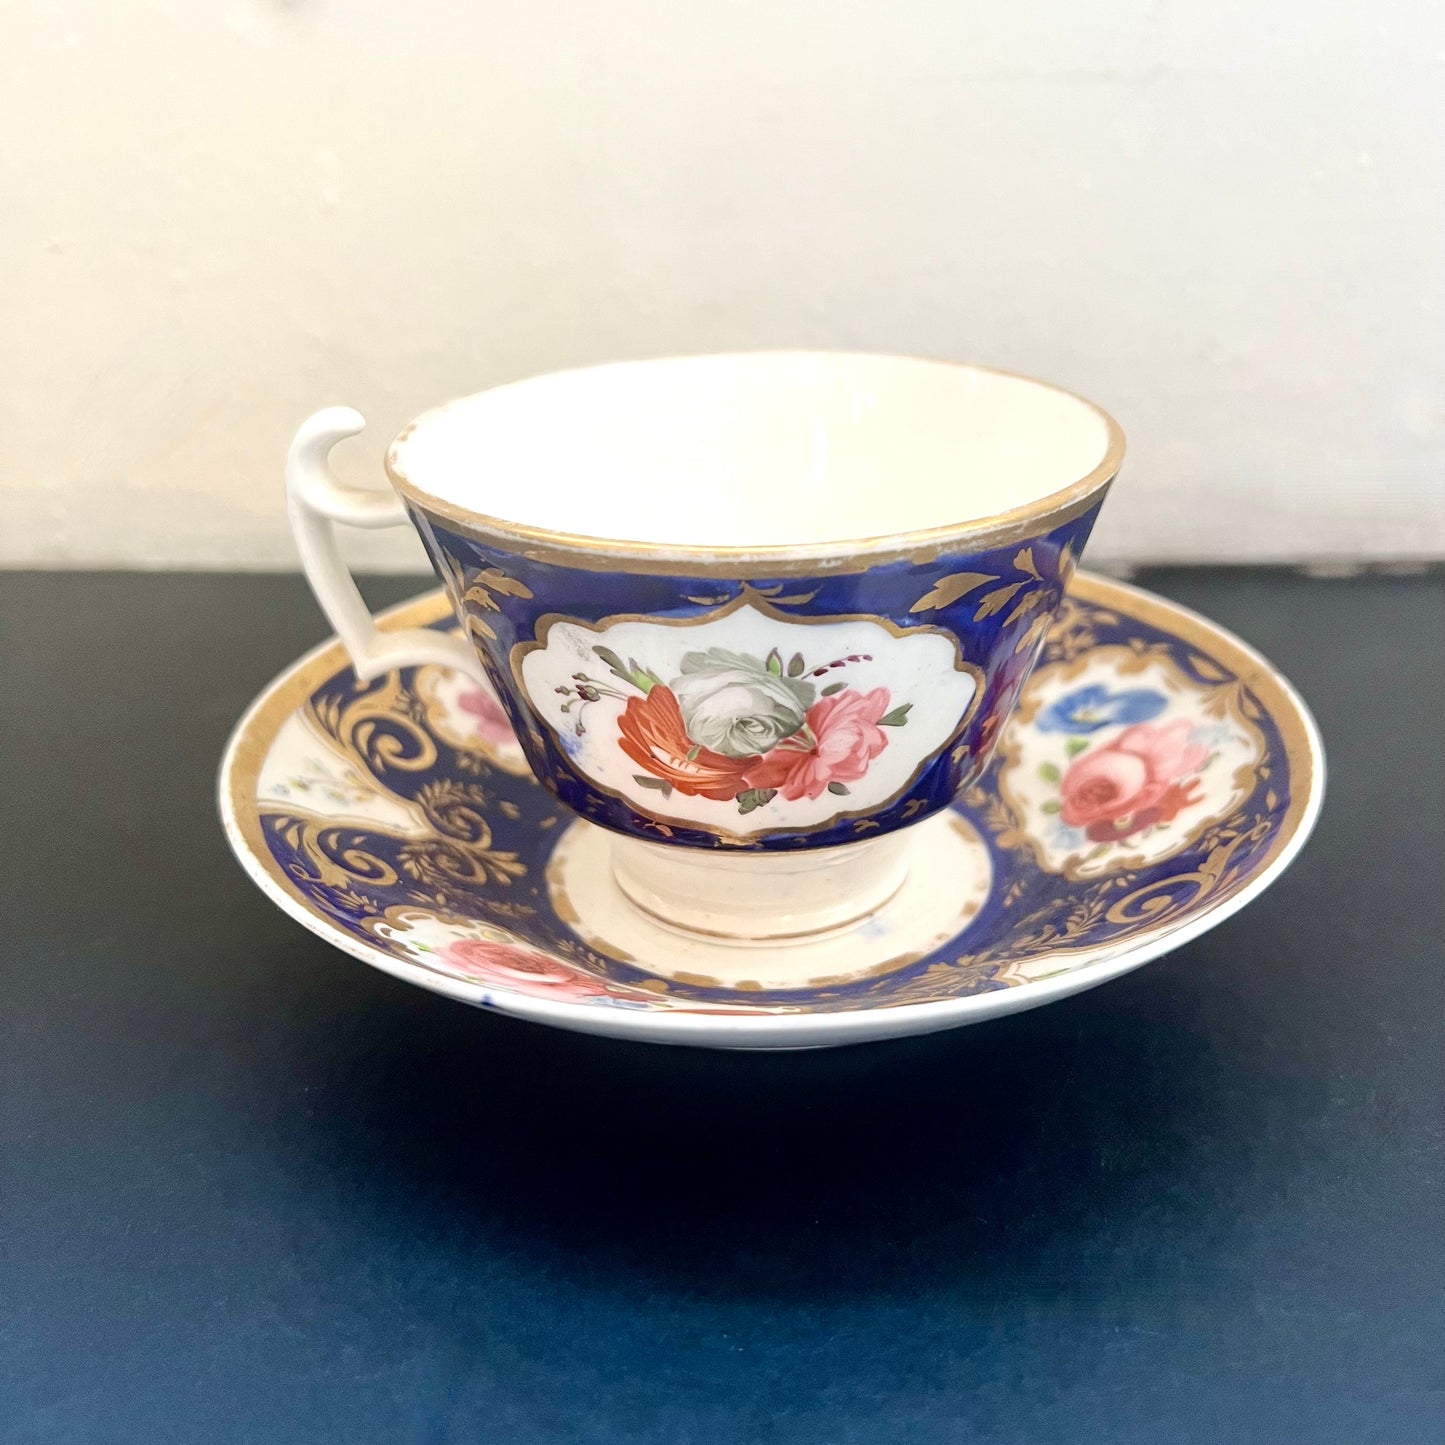 19 世纪早期英国瓷器杯碟，约 1817-1830 年，由 Charles Bourne 制作